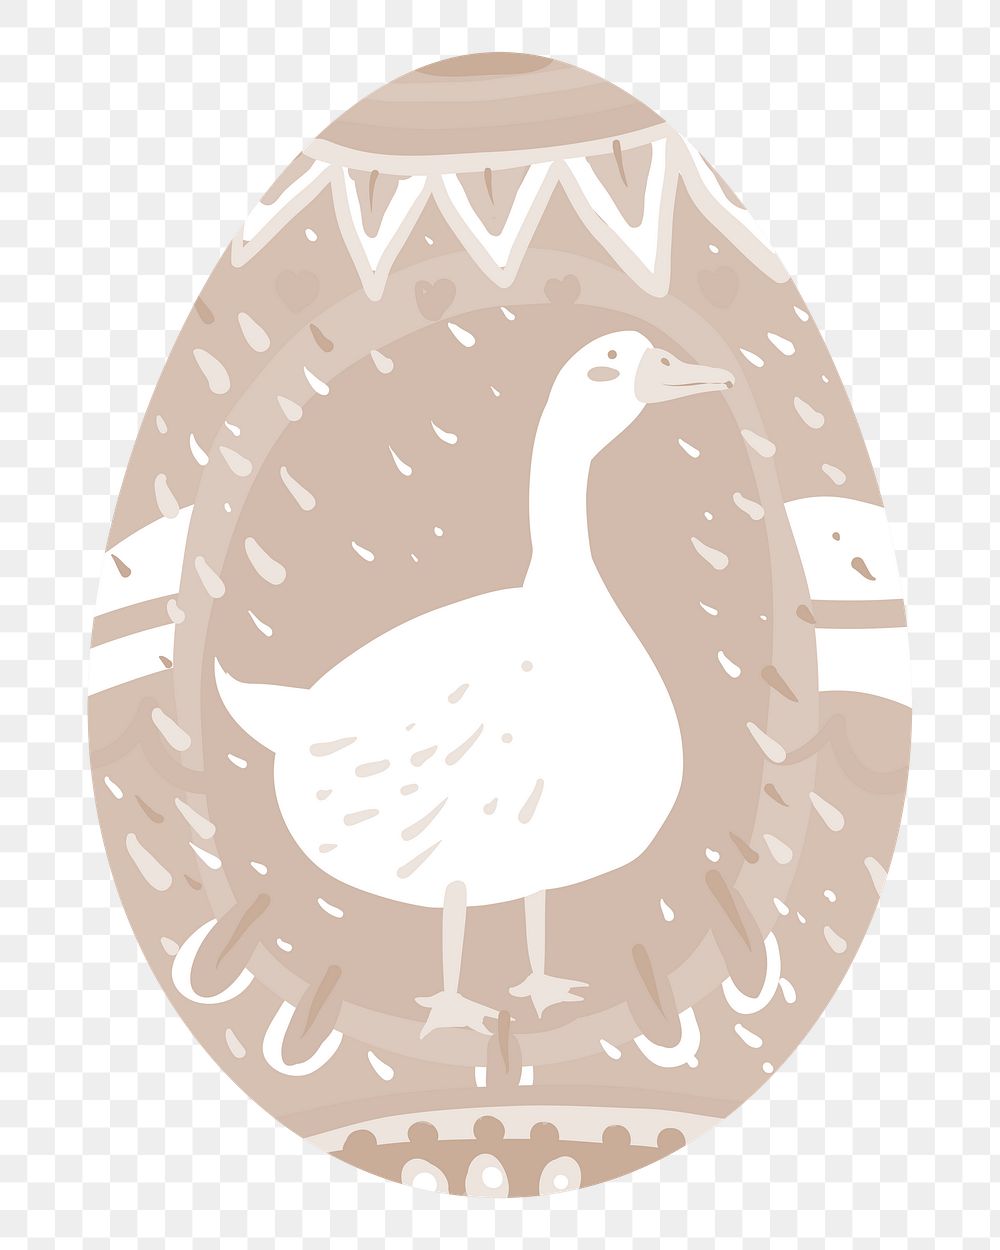 Png brown duck easter egg illustration, transparent background